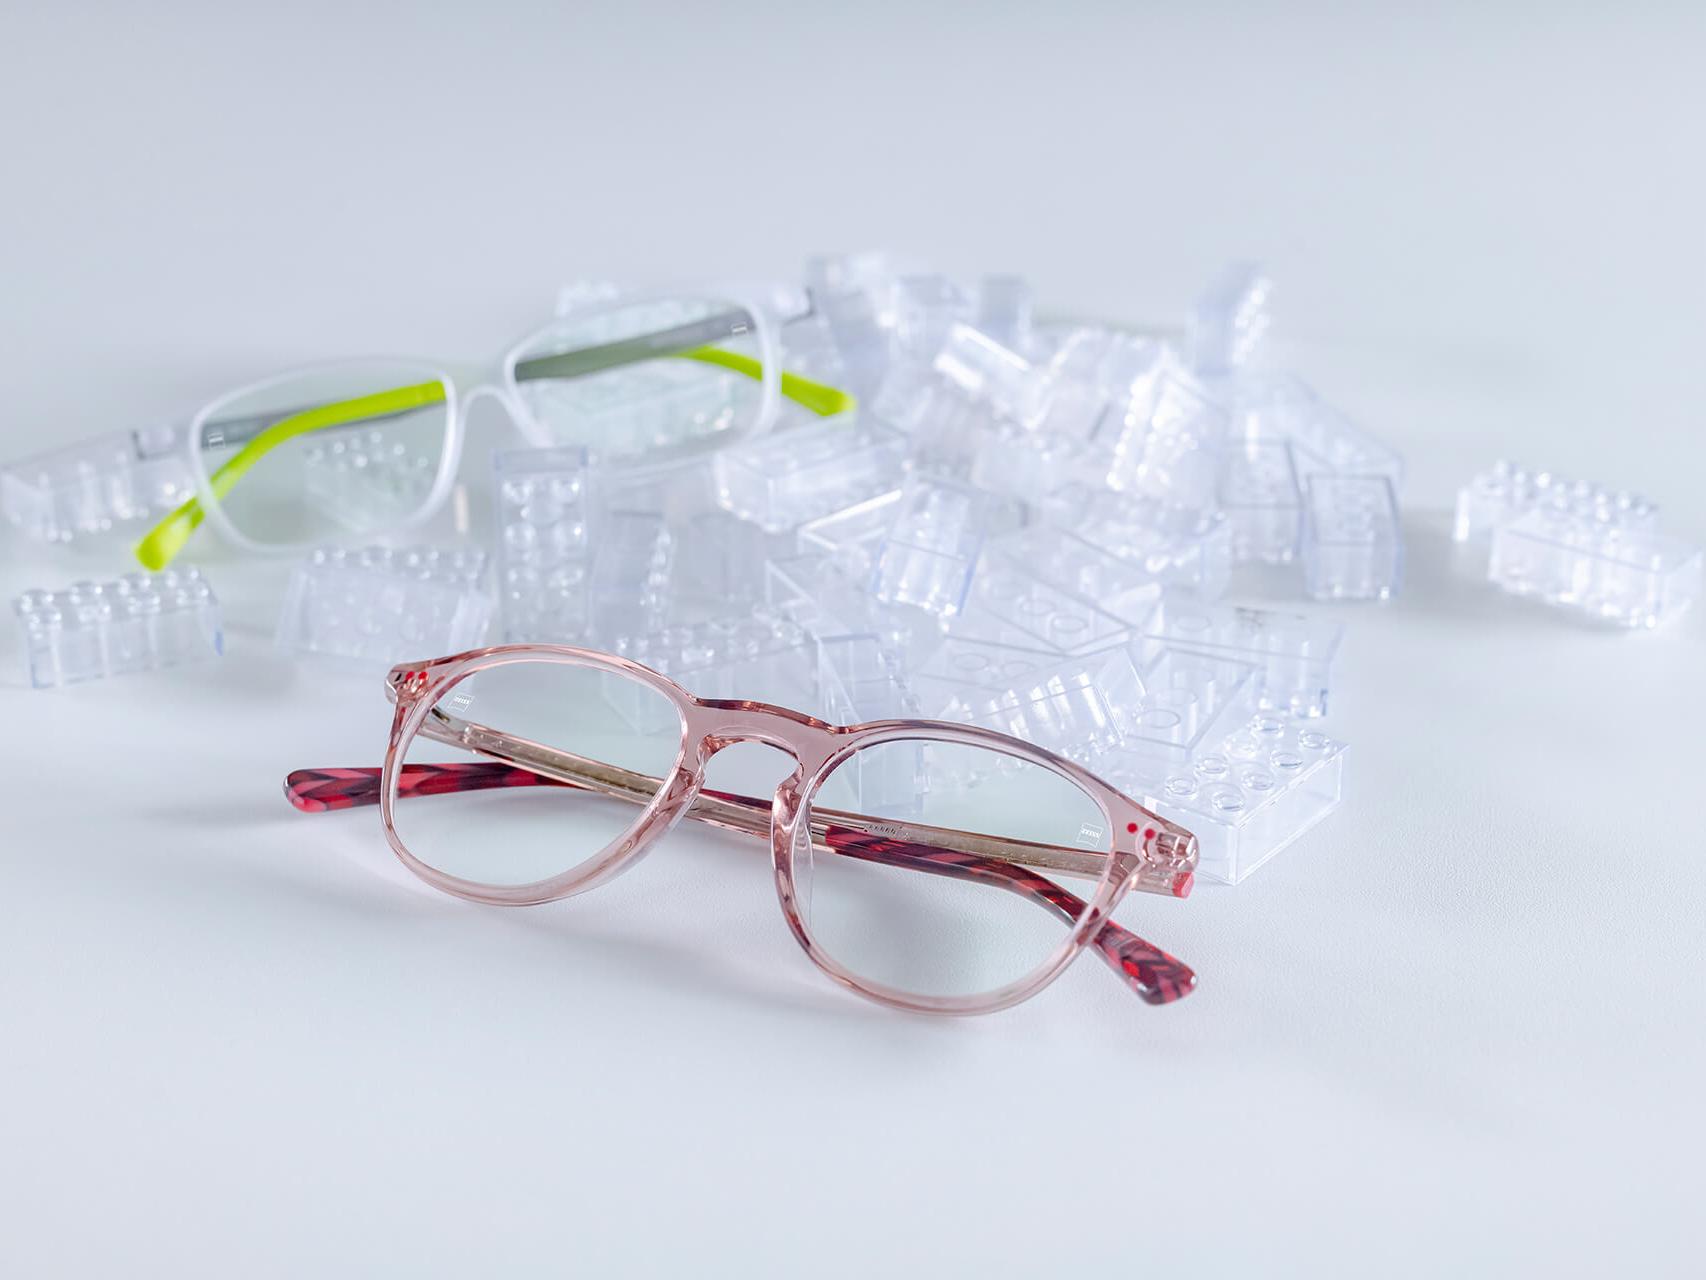 Kahdet lasten silmälasit, joissa on ZEISS-linssit ja DuraVision® Kids -pinnoite. Silmälasit on sijoitettu läpinäkyvien lasten palikoiden keskelle.